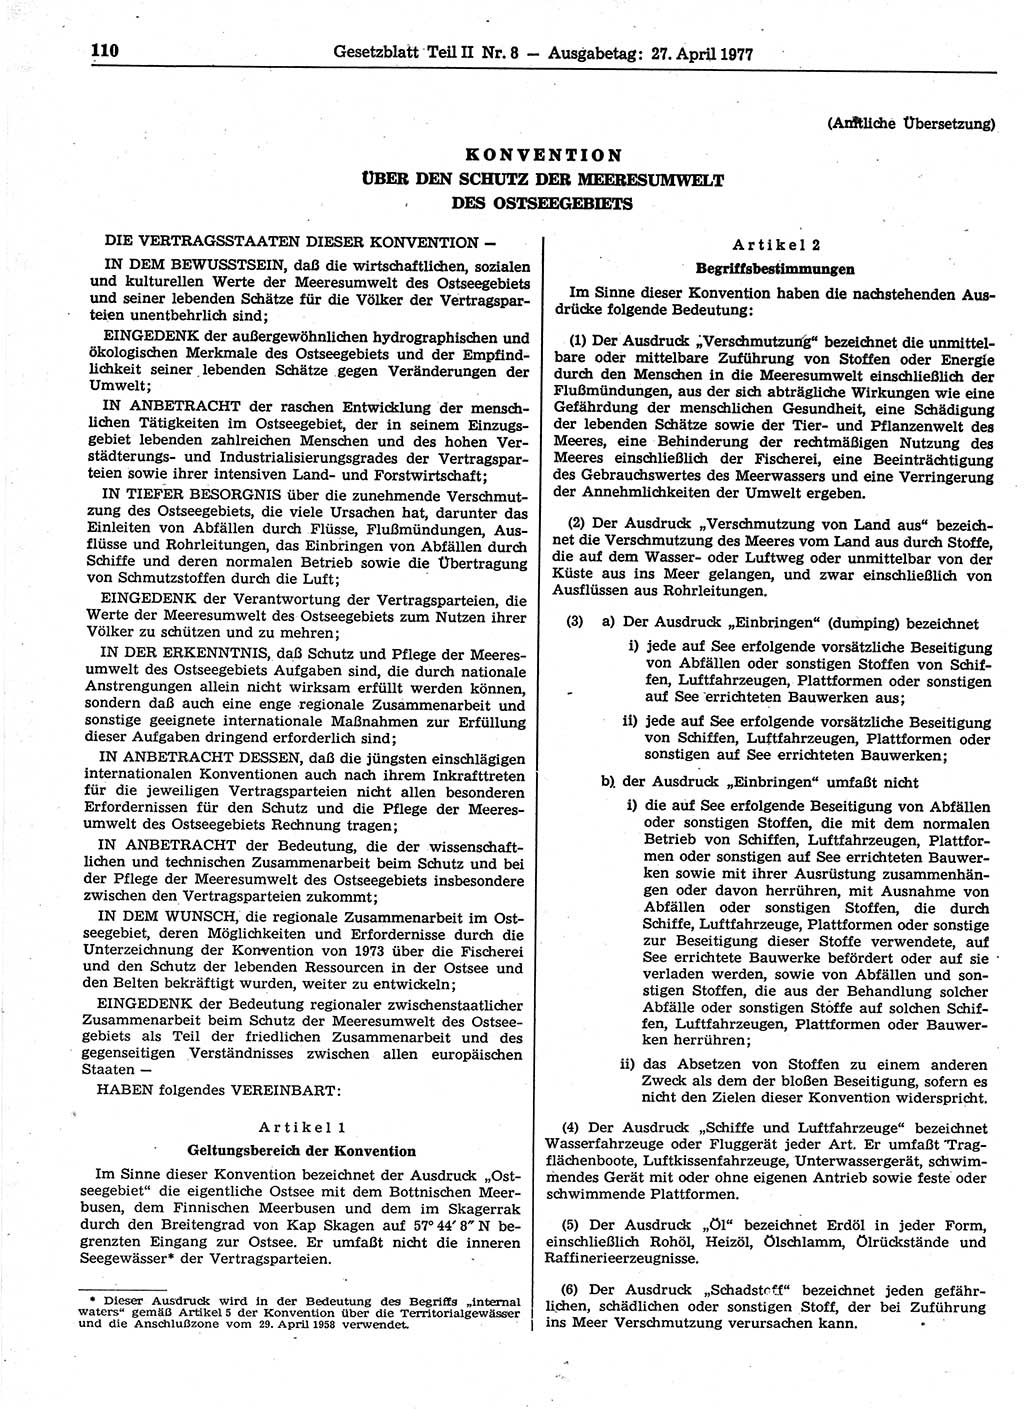 Gesetzblatt (GBl.) der Deutschen Demokratischen Republik (DDR) Teil ⅠⅠ 1977, Seite 110 (GBl. DDR ⅠⅠ 1977, S. 110)